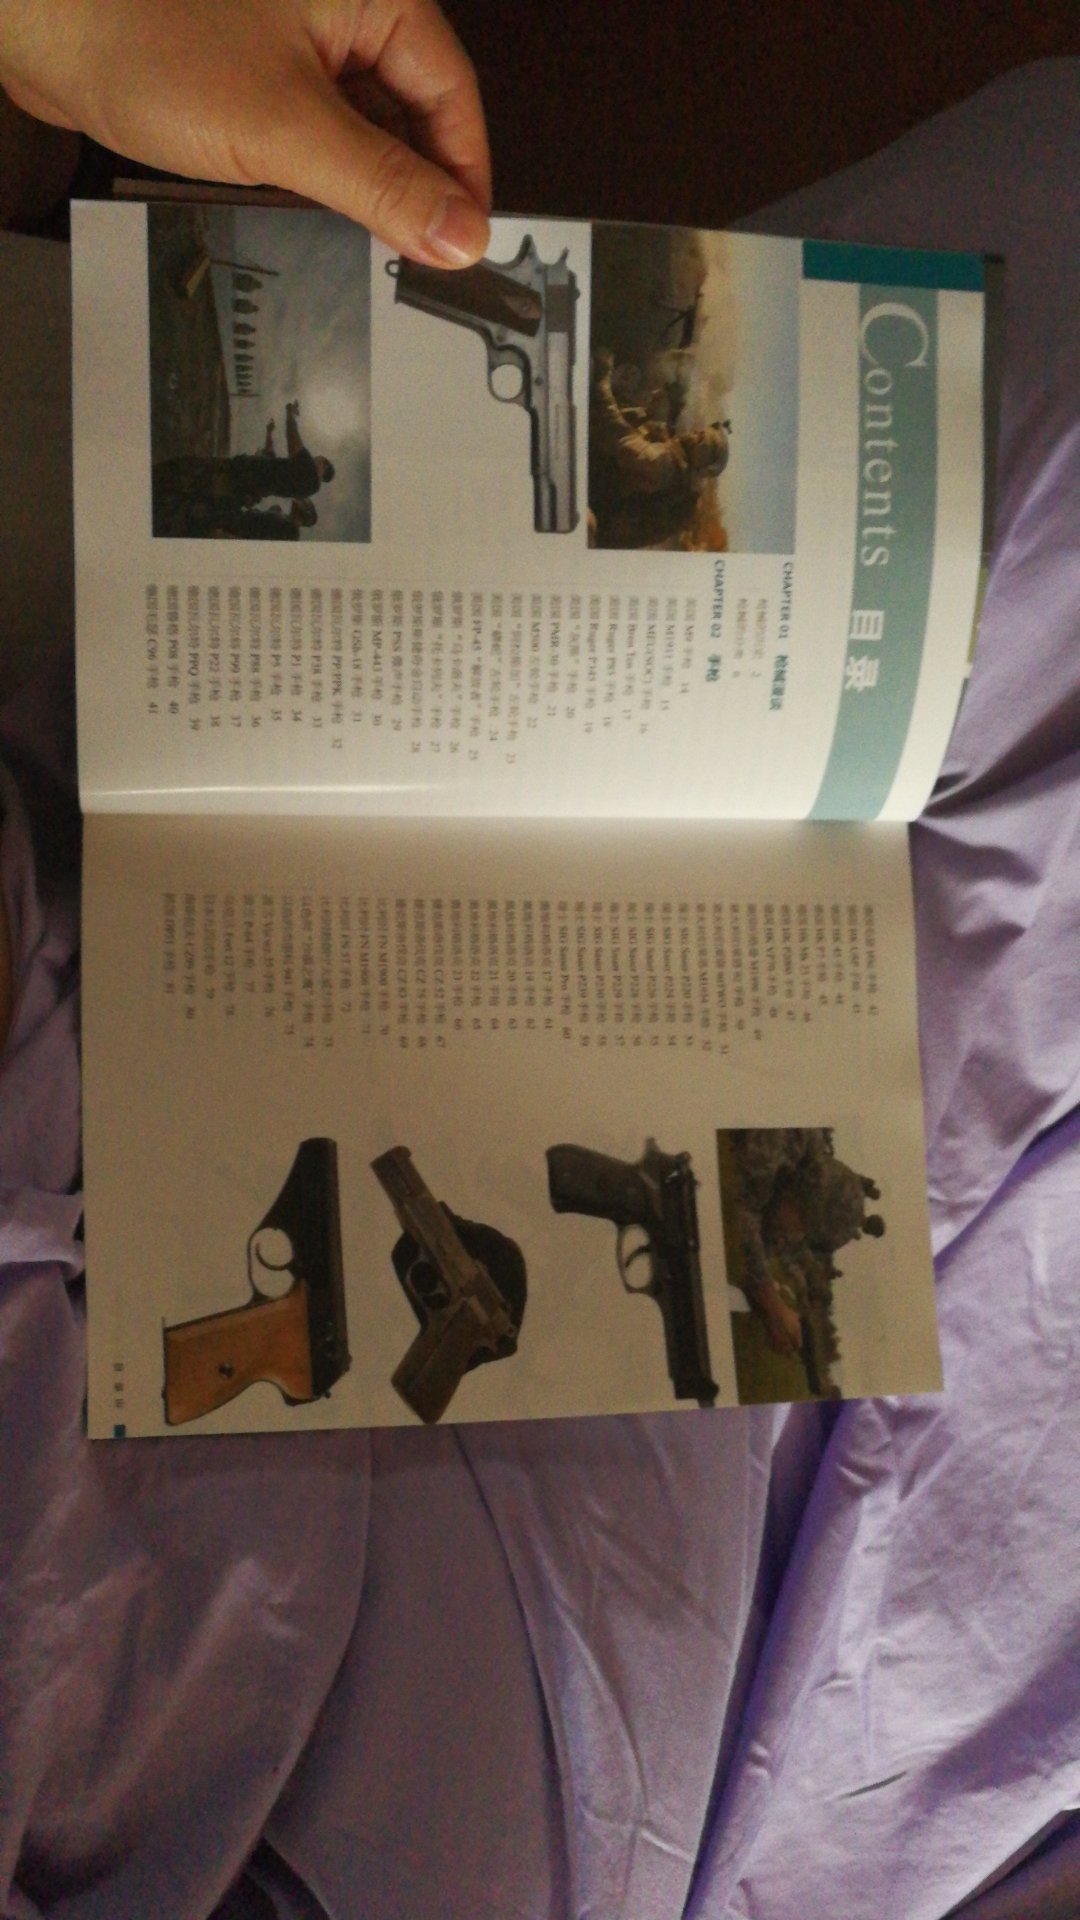 印刷非常精美，算得上是现代枪械图集的大词典，虽然文字描述略简单，但是特别指出图片收集得非常多，是军事迷和枪迷的收藏之作。